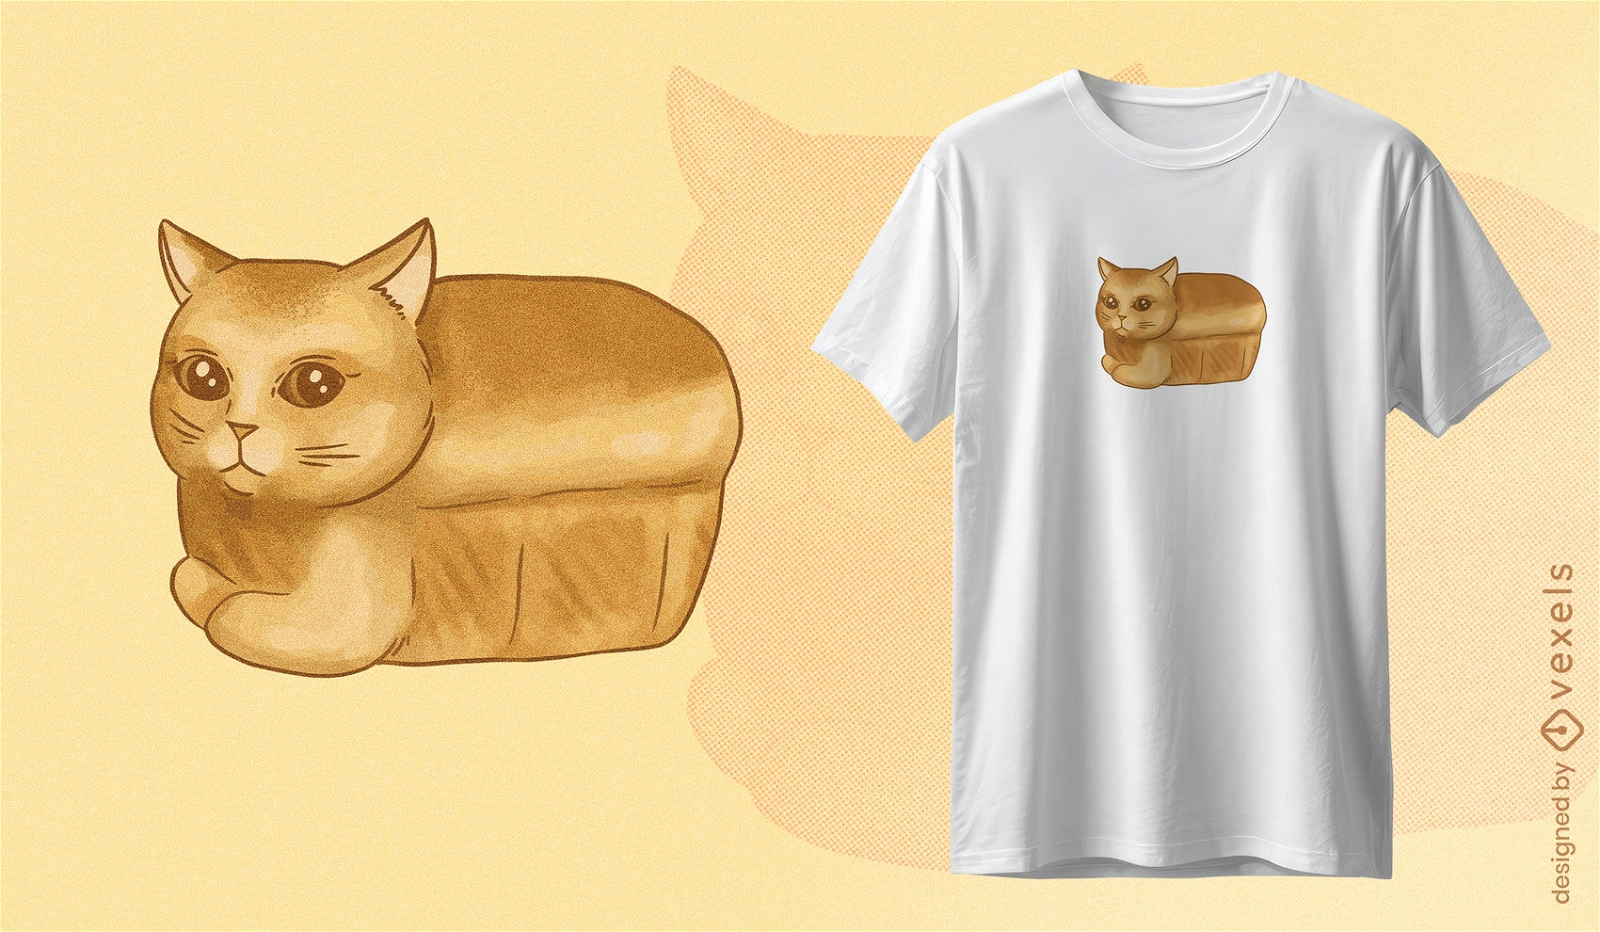 Dise?o de camiseta de gato pan.